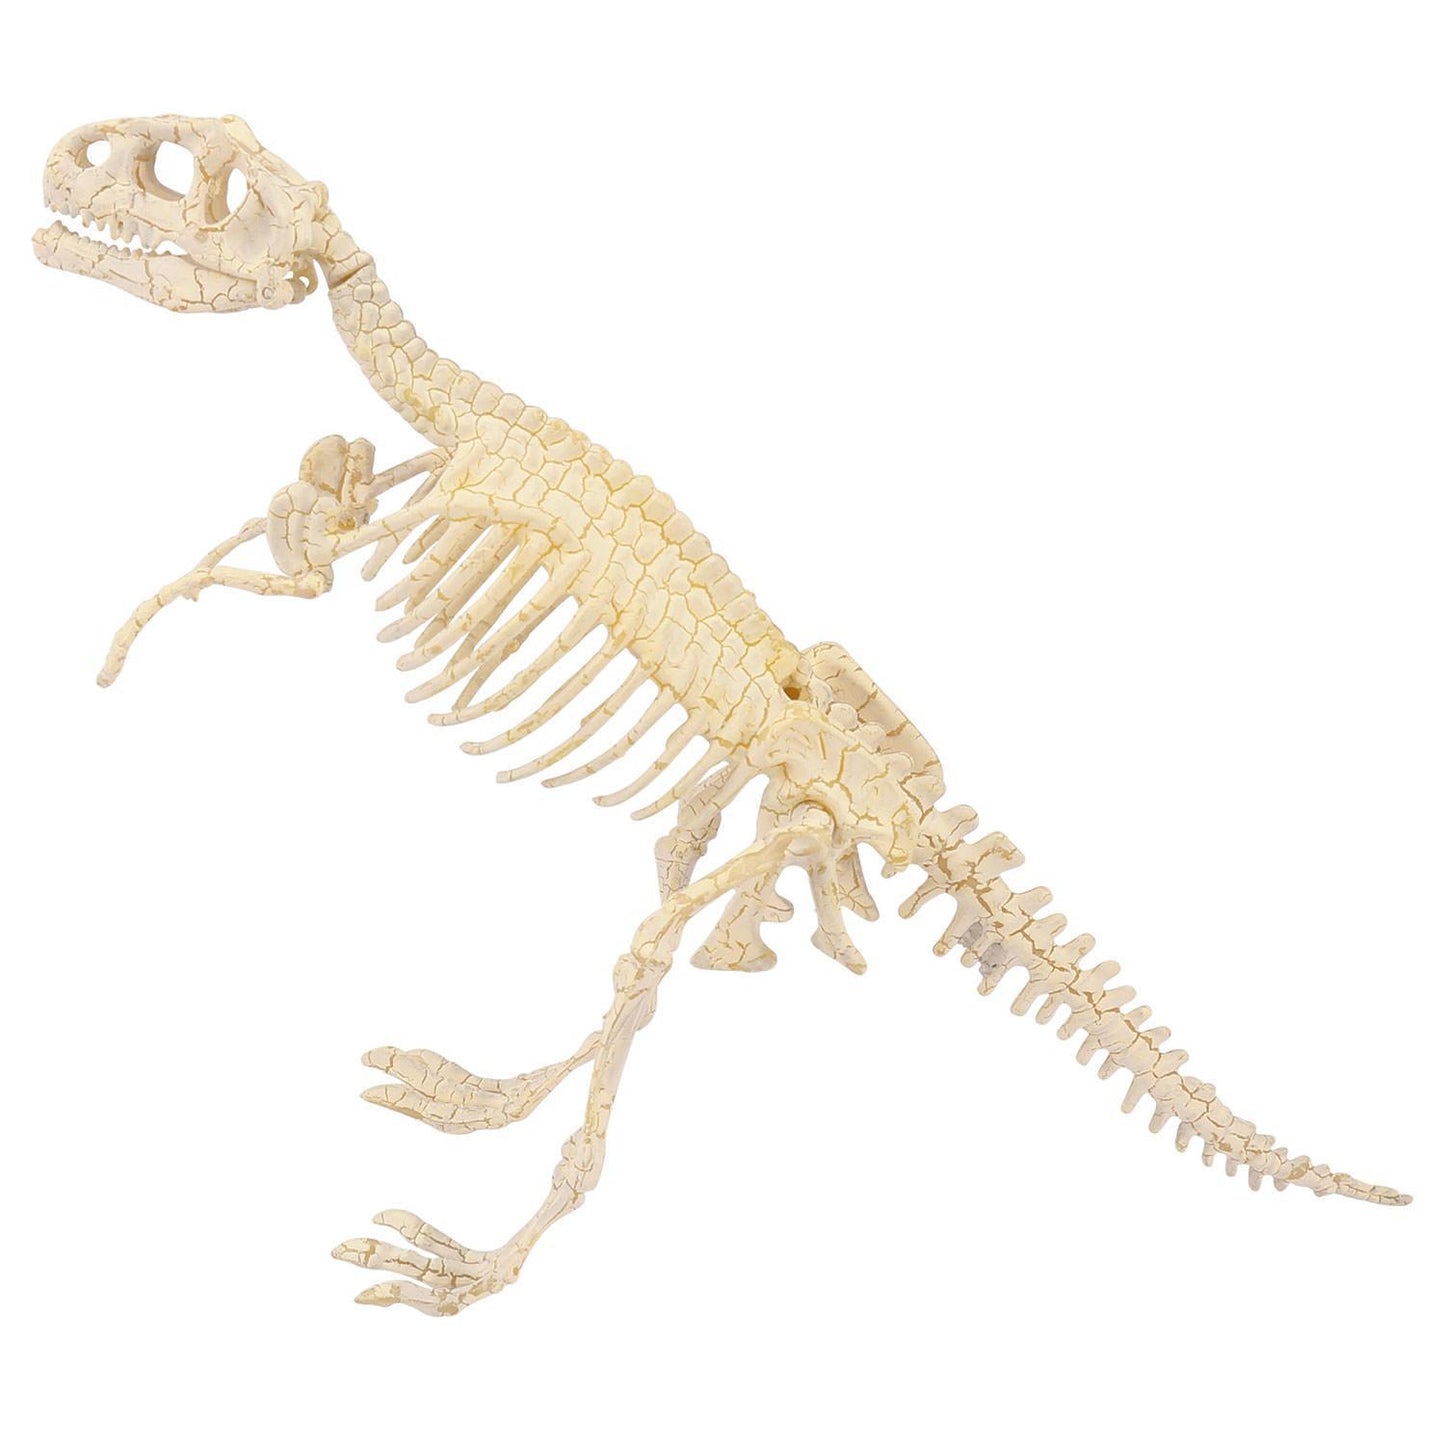 Heebie Jeebies Tyrannosaurus Palaeontology Kit